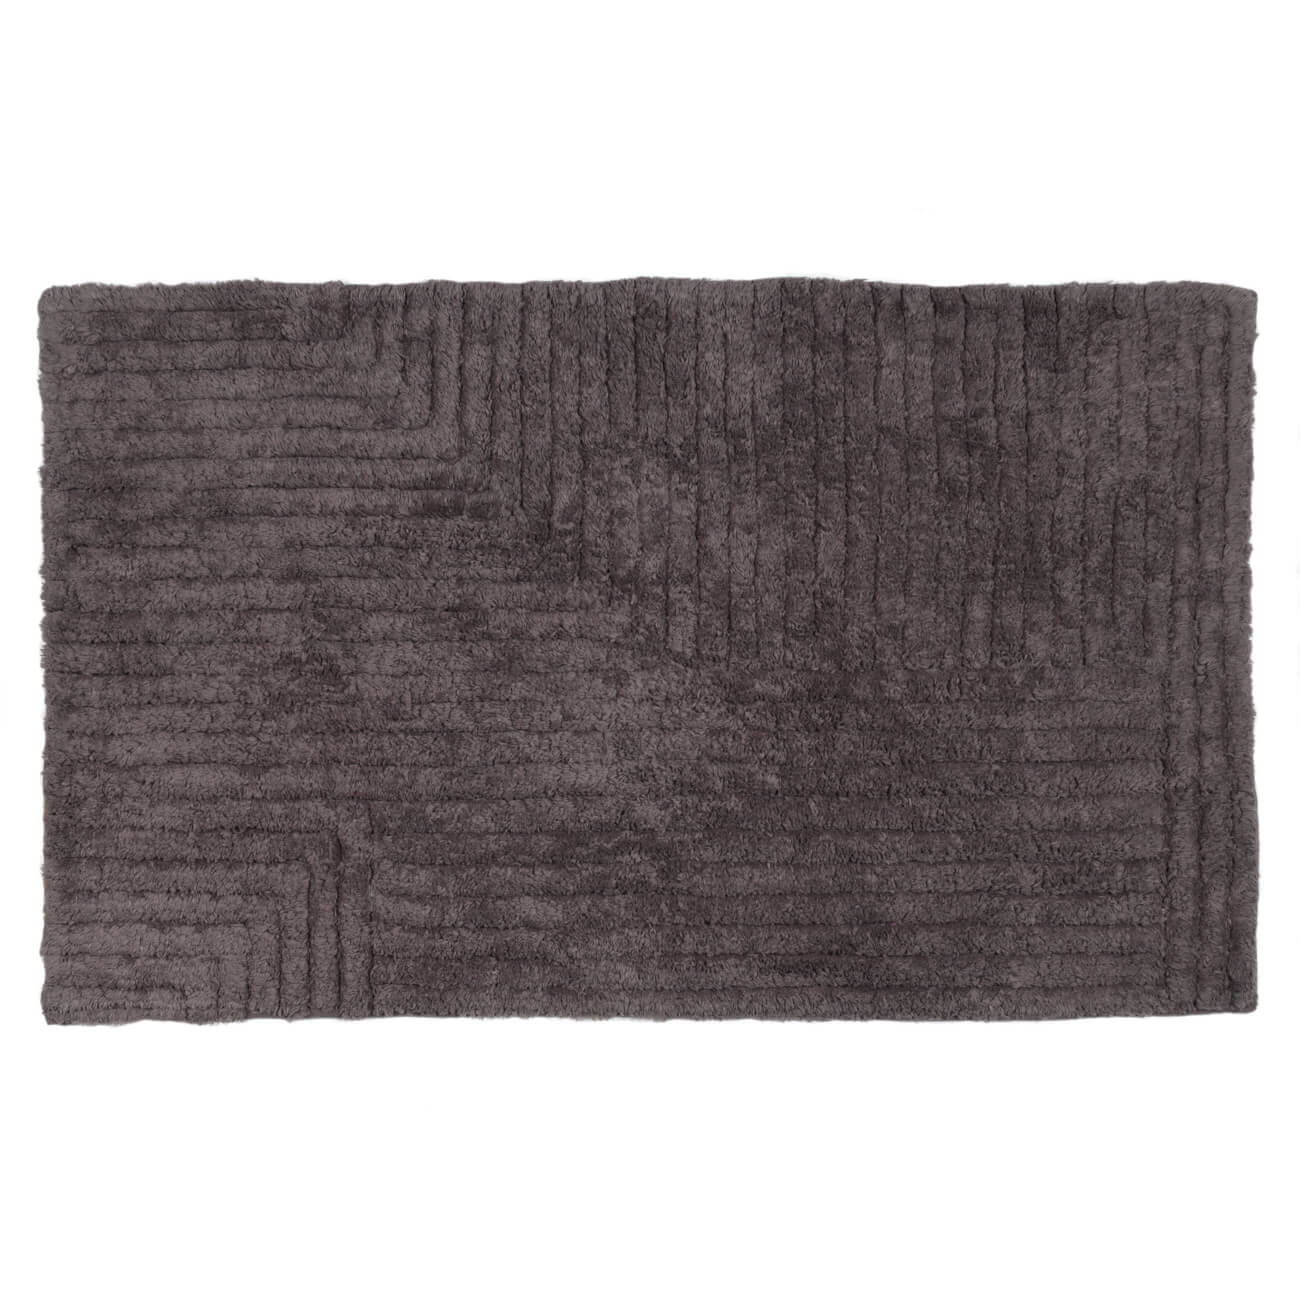 Коврик, 50х80 см, хлопок, серо-коричневый, Геометрия, Cage pattern коврик накидка henan prosper grey 80см ворс 55мм